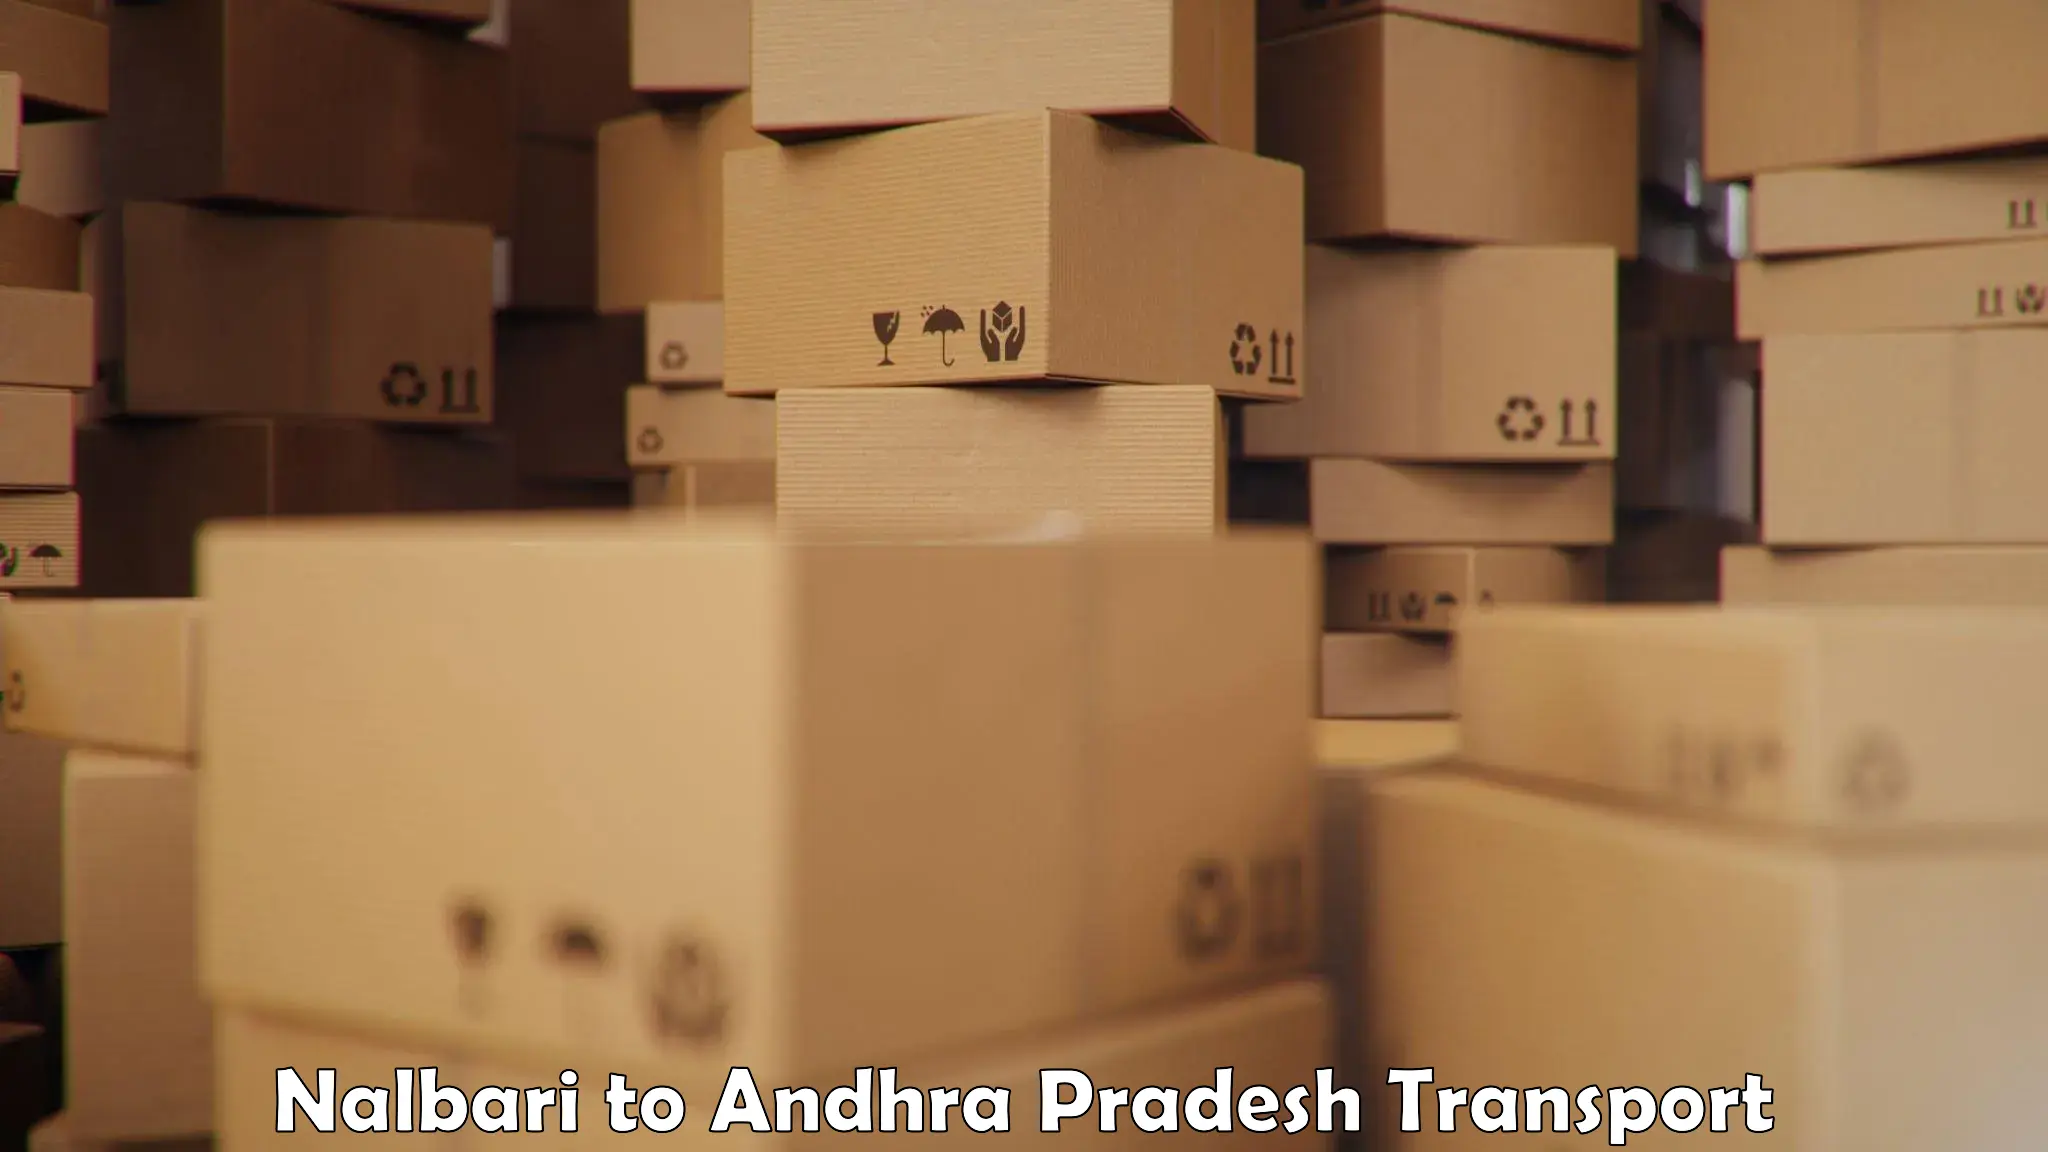 Truck transport companies in India Nalbari to Puttaparthi